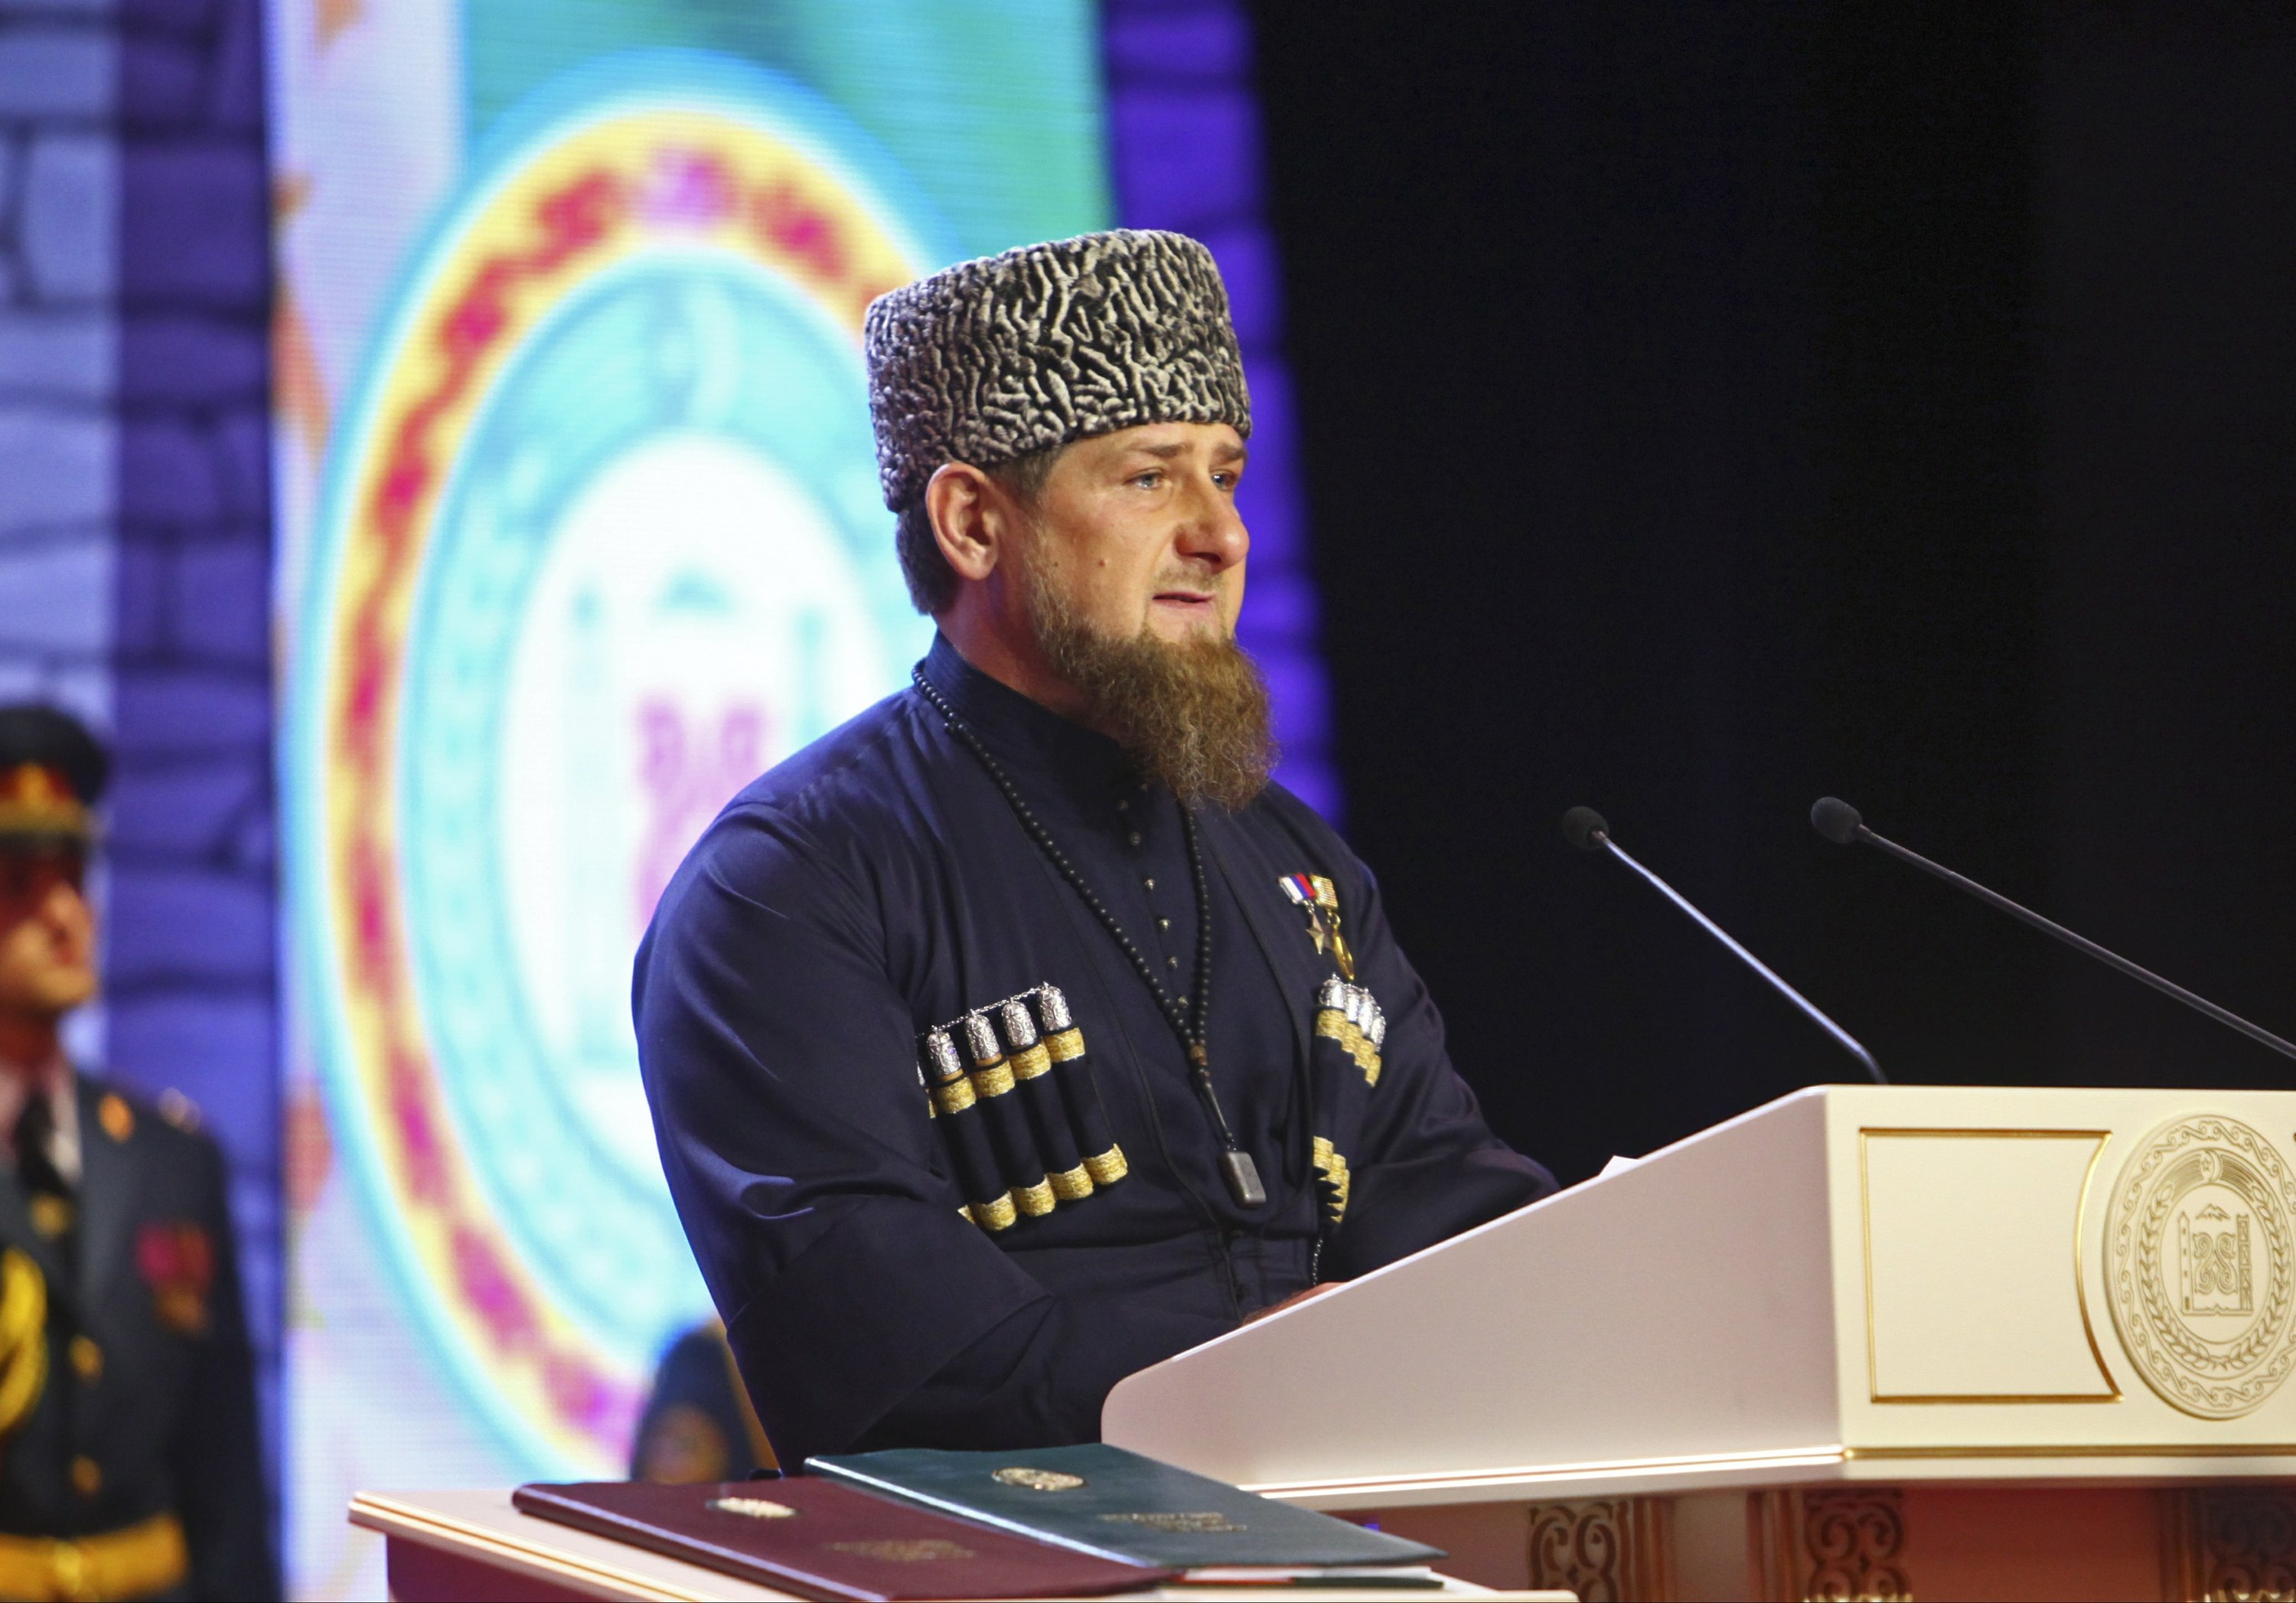 Кадыров в шапке